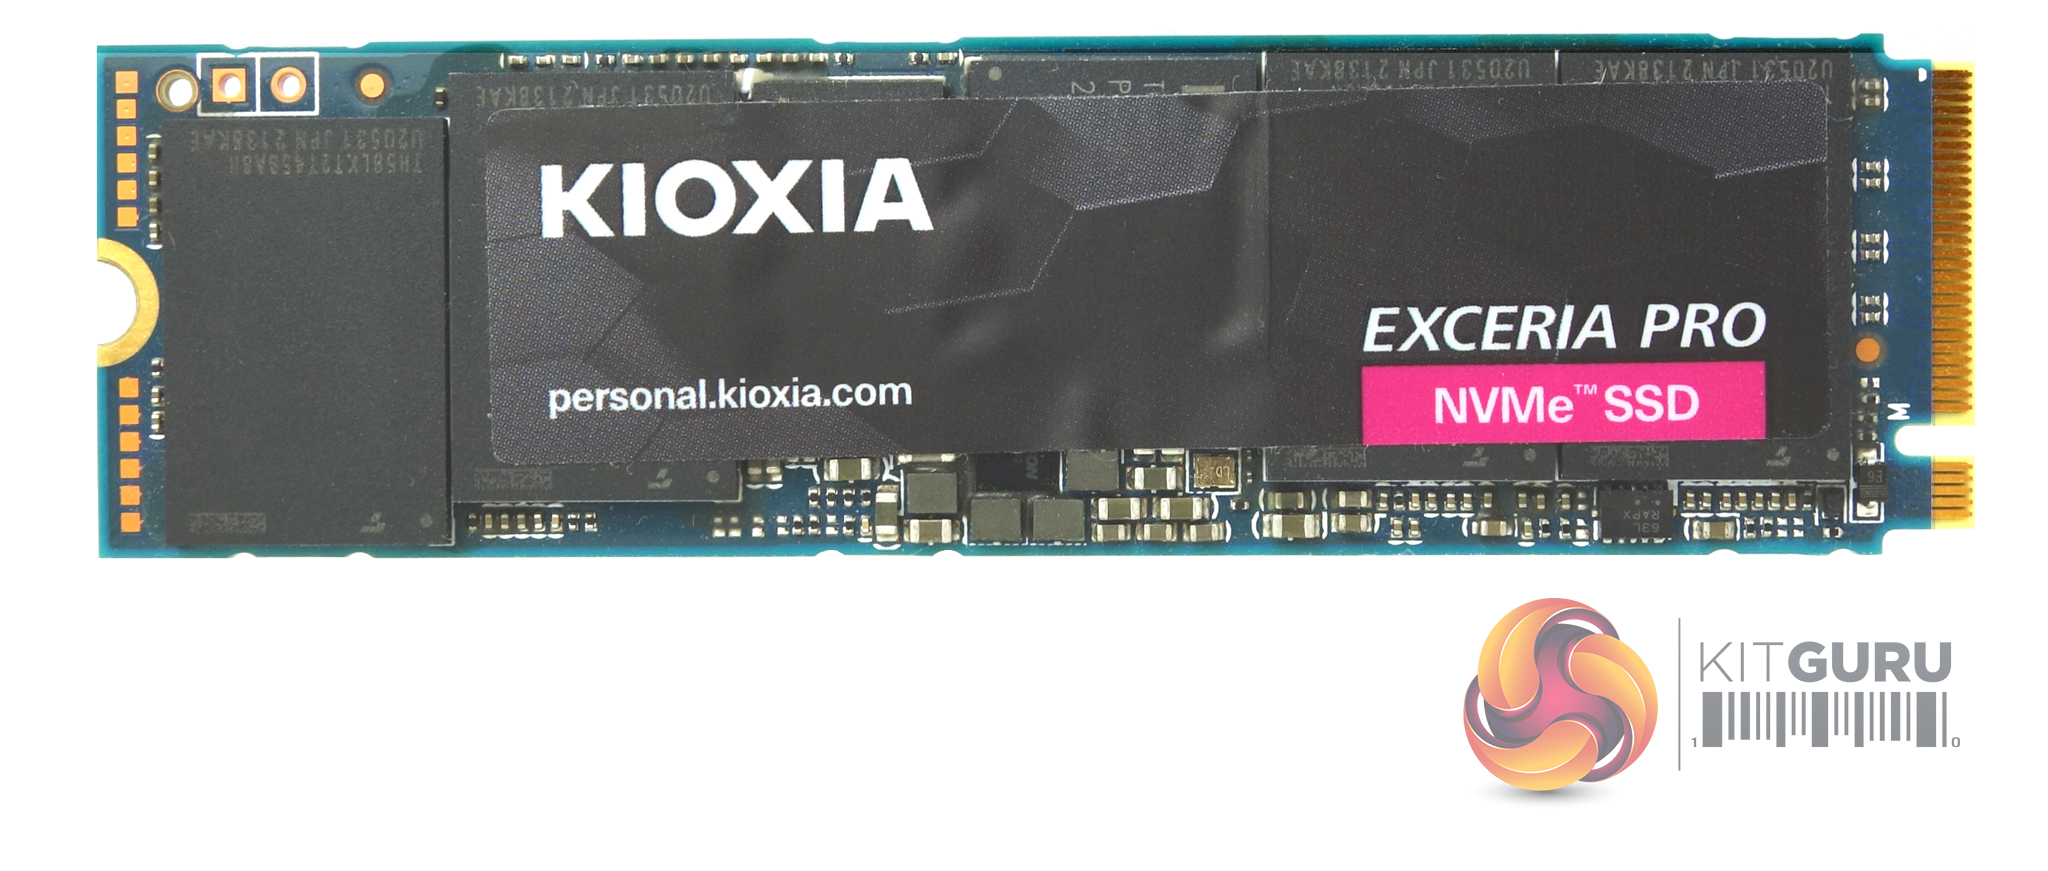 Kioxia Exceria Pro 2TB Review | KitGuru- Part 2